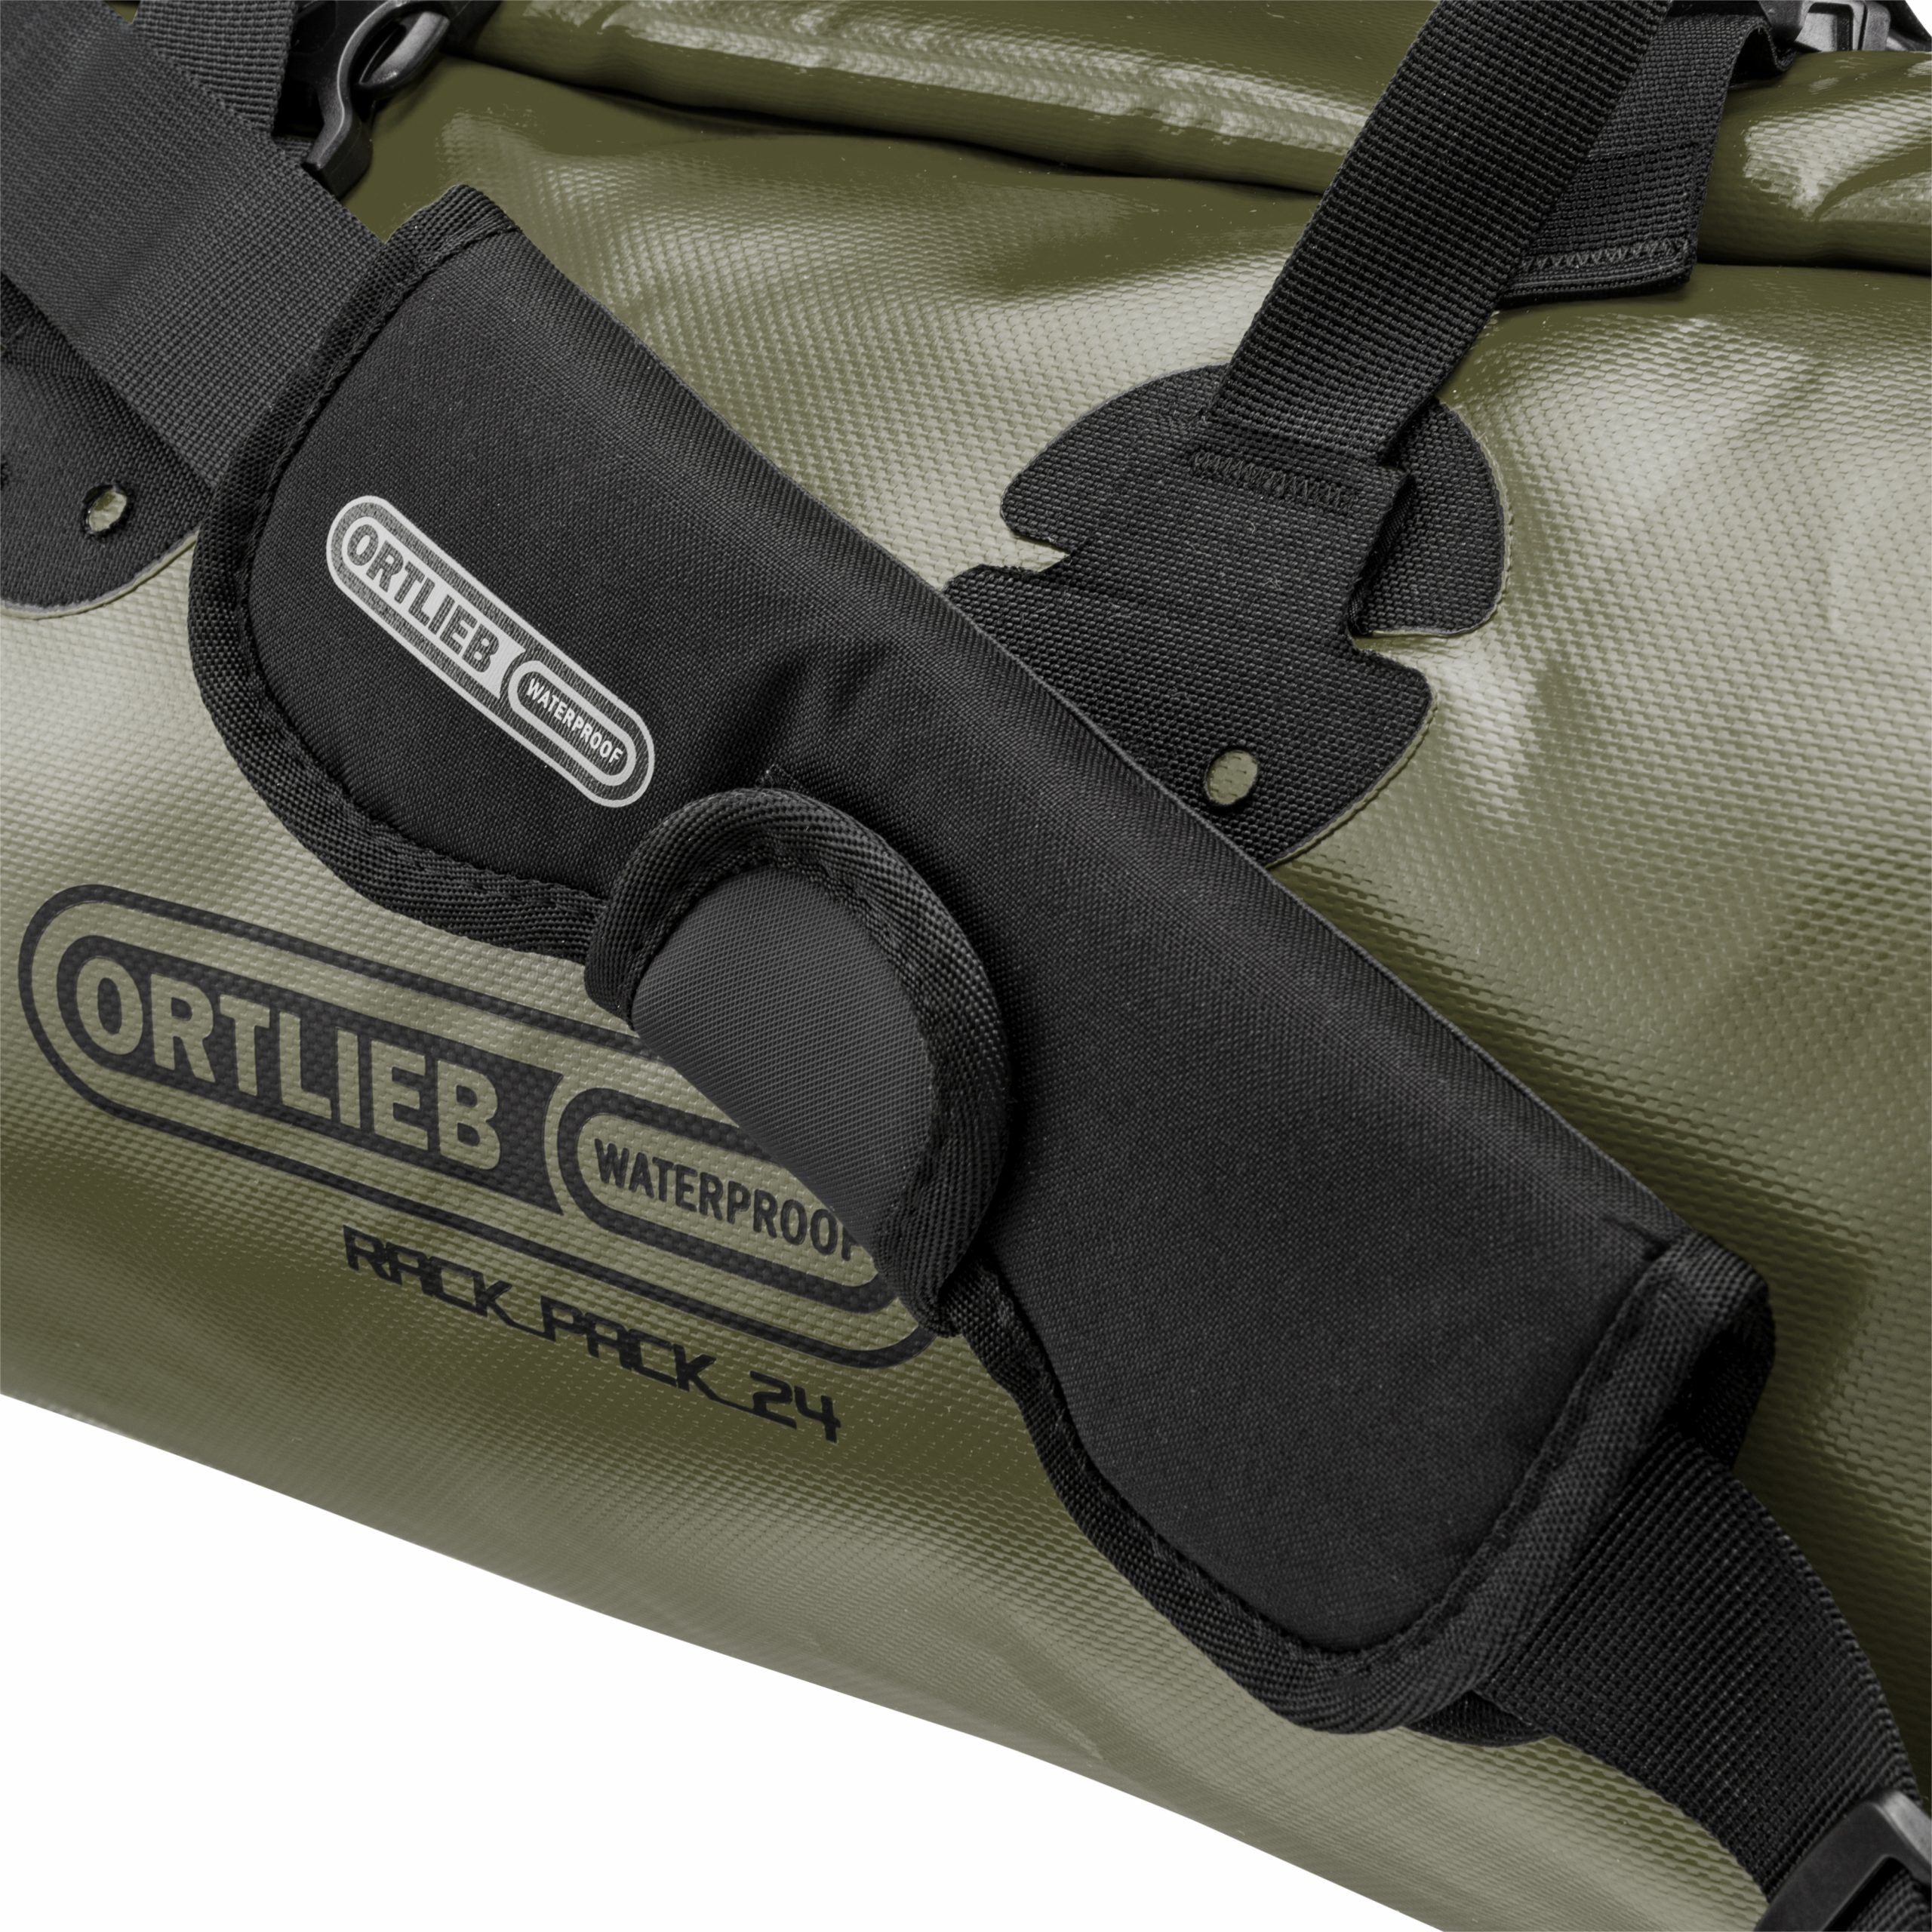 Votre sac de voyage Ortlieb Rack-Pack 24 à 89L sur Cyclable.com !